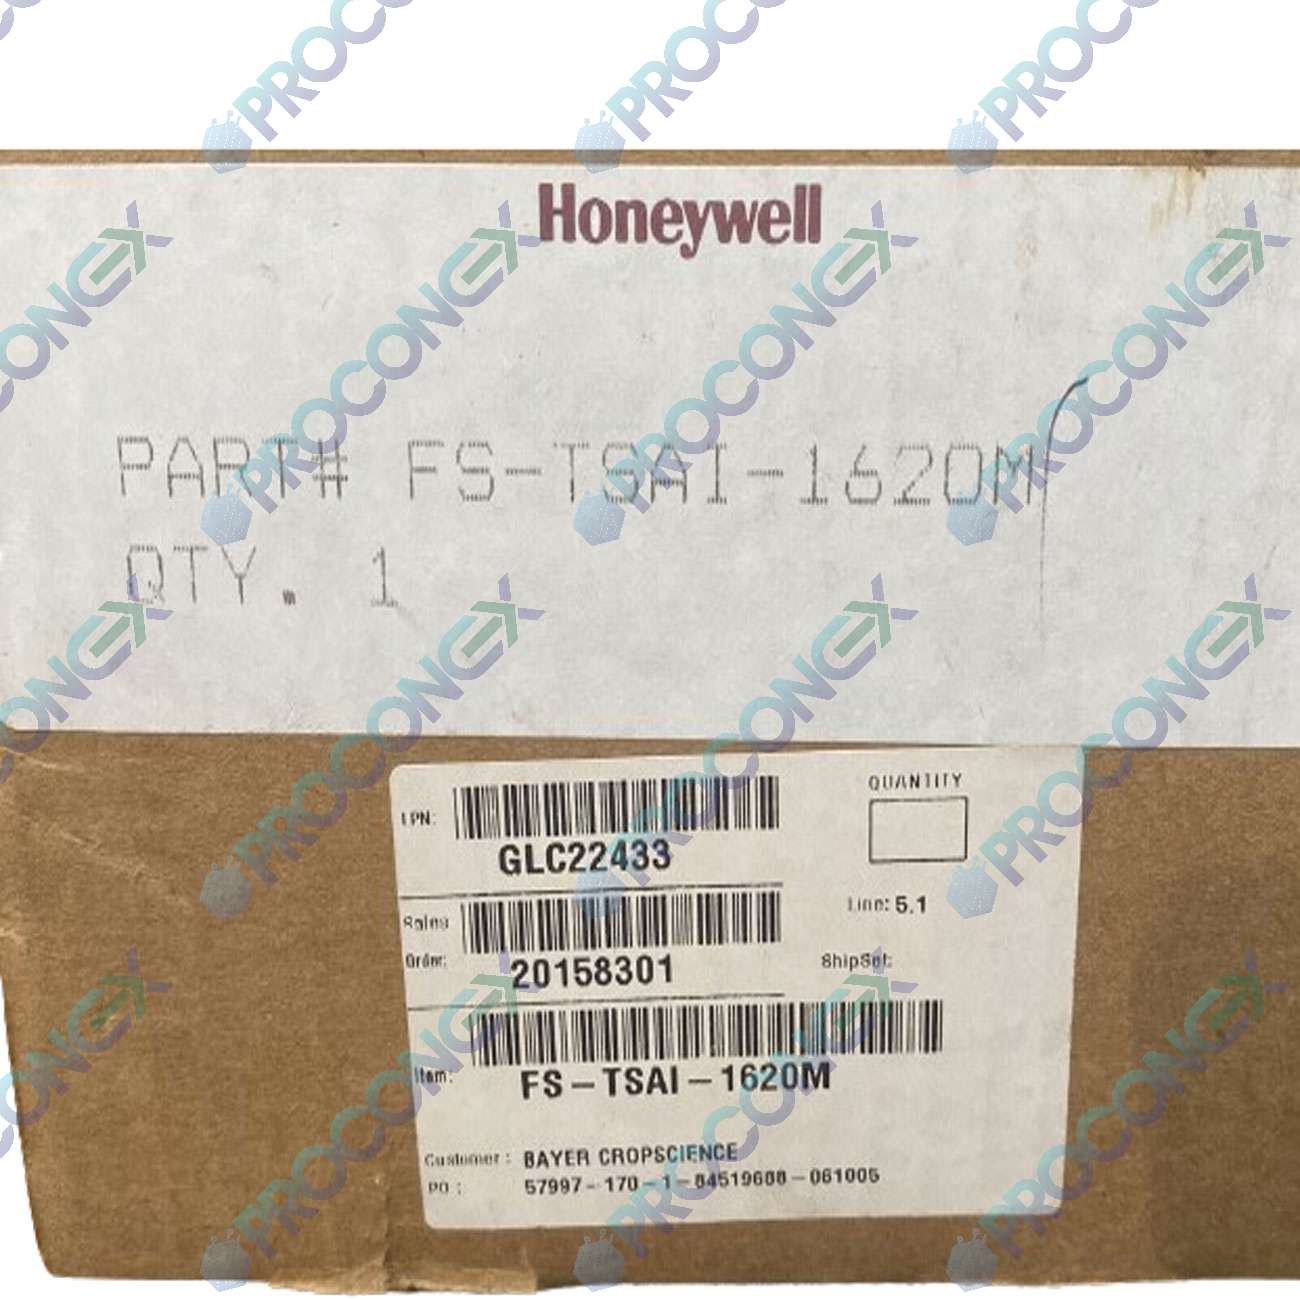 FC-TSAI-1620M – Honeywell - Proconex